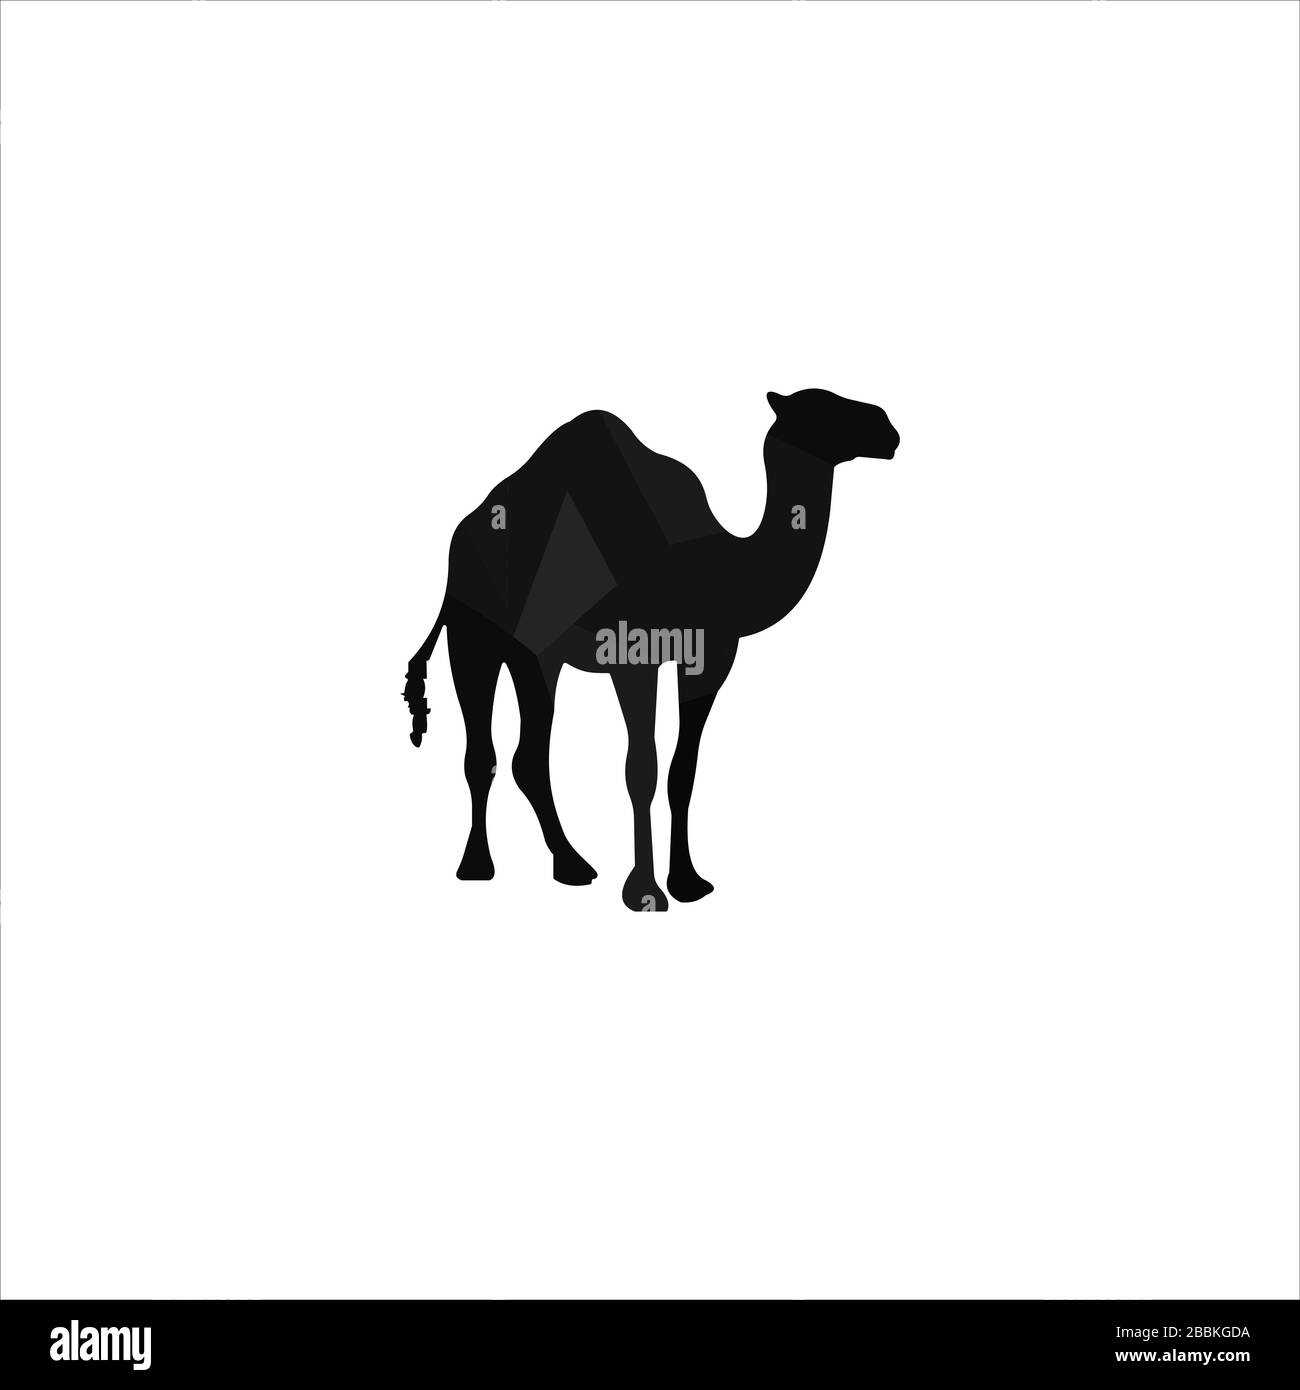 Plantilla de diseño de logotipo de camello animal Ilustración del Vector